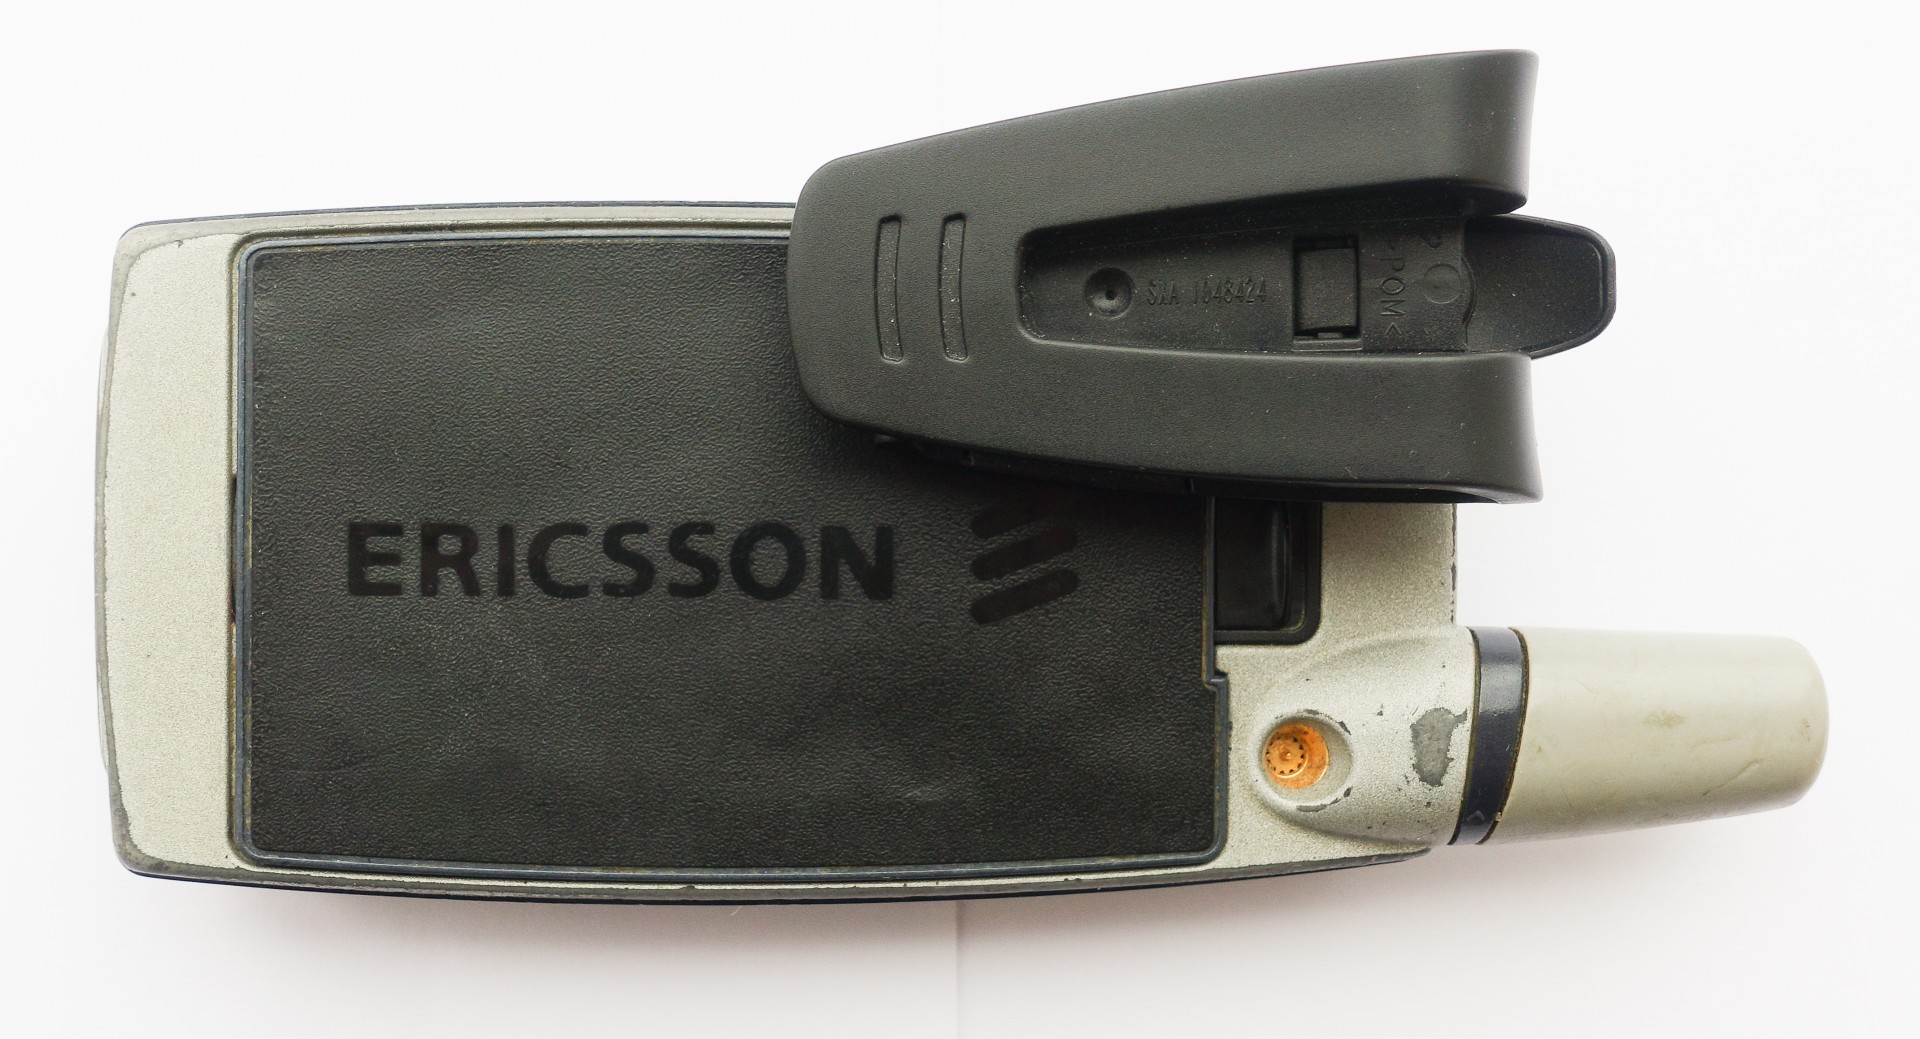 Древности: Ericsson T39 и ранний мобильный интернет - 4